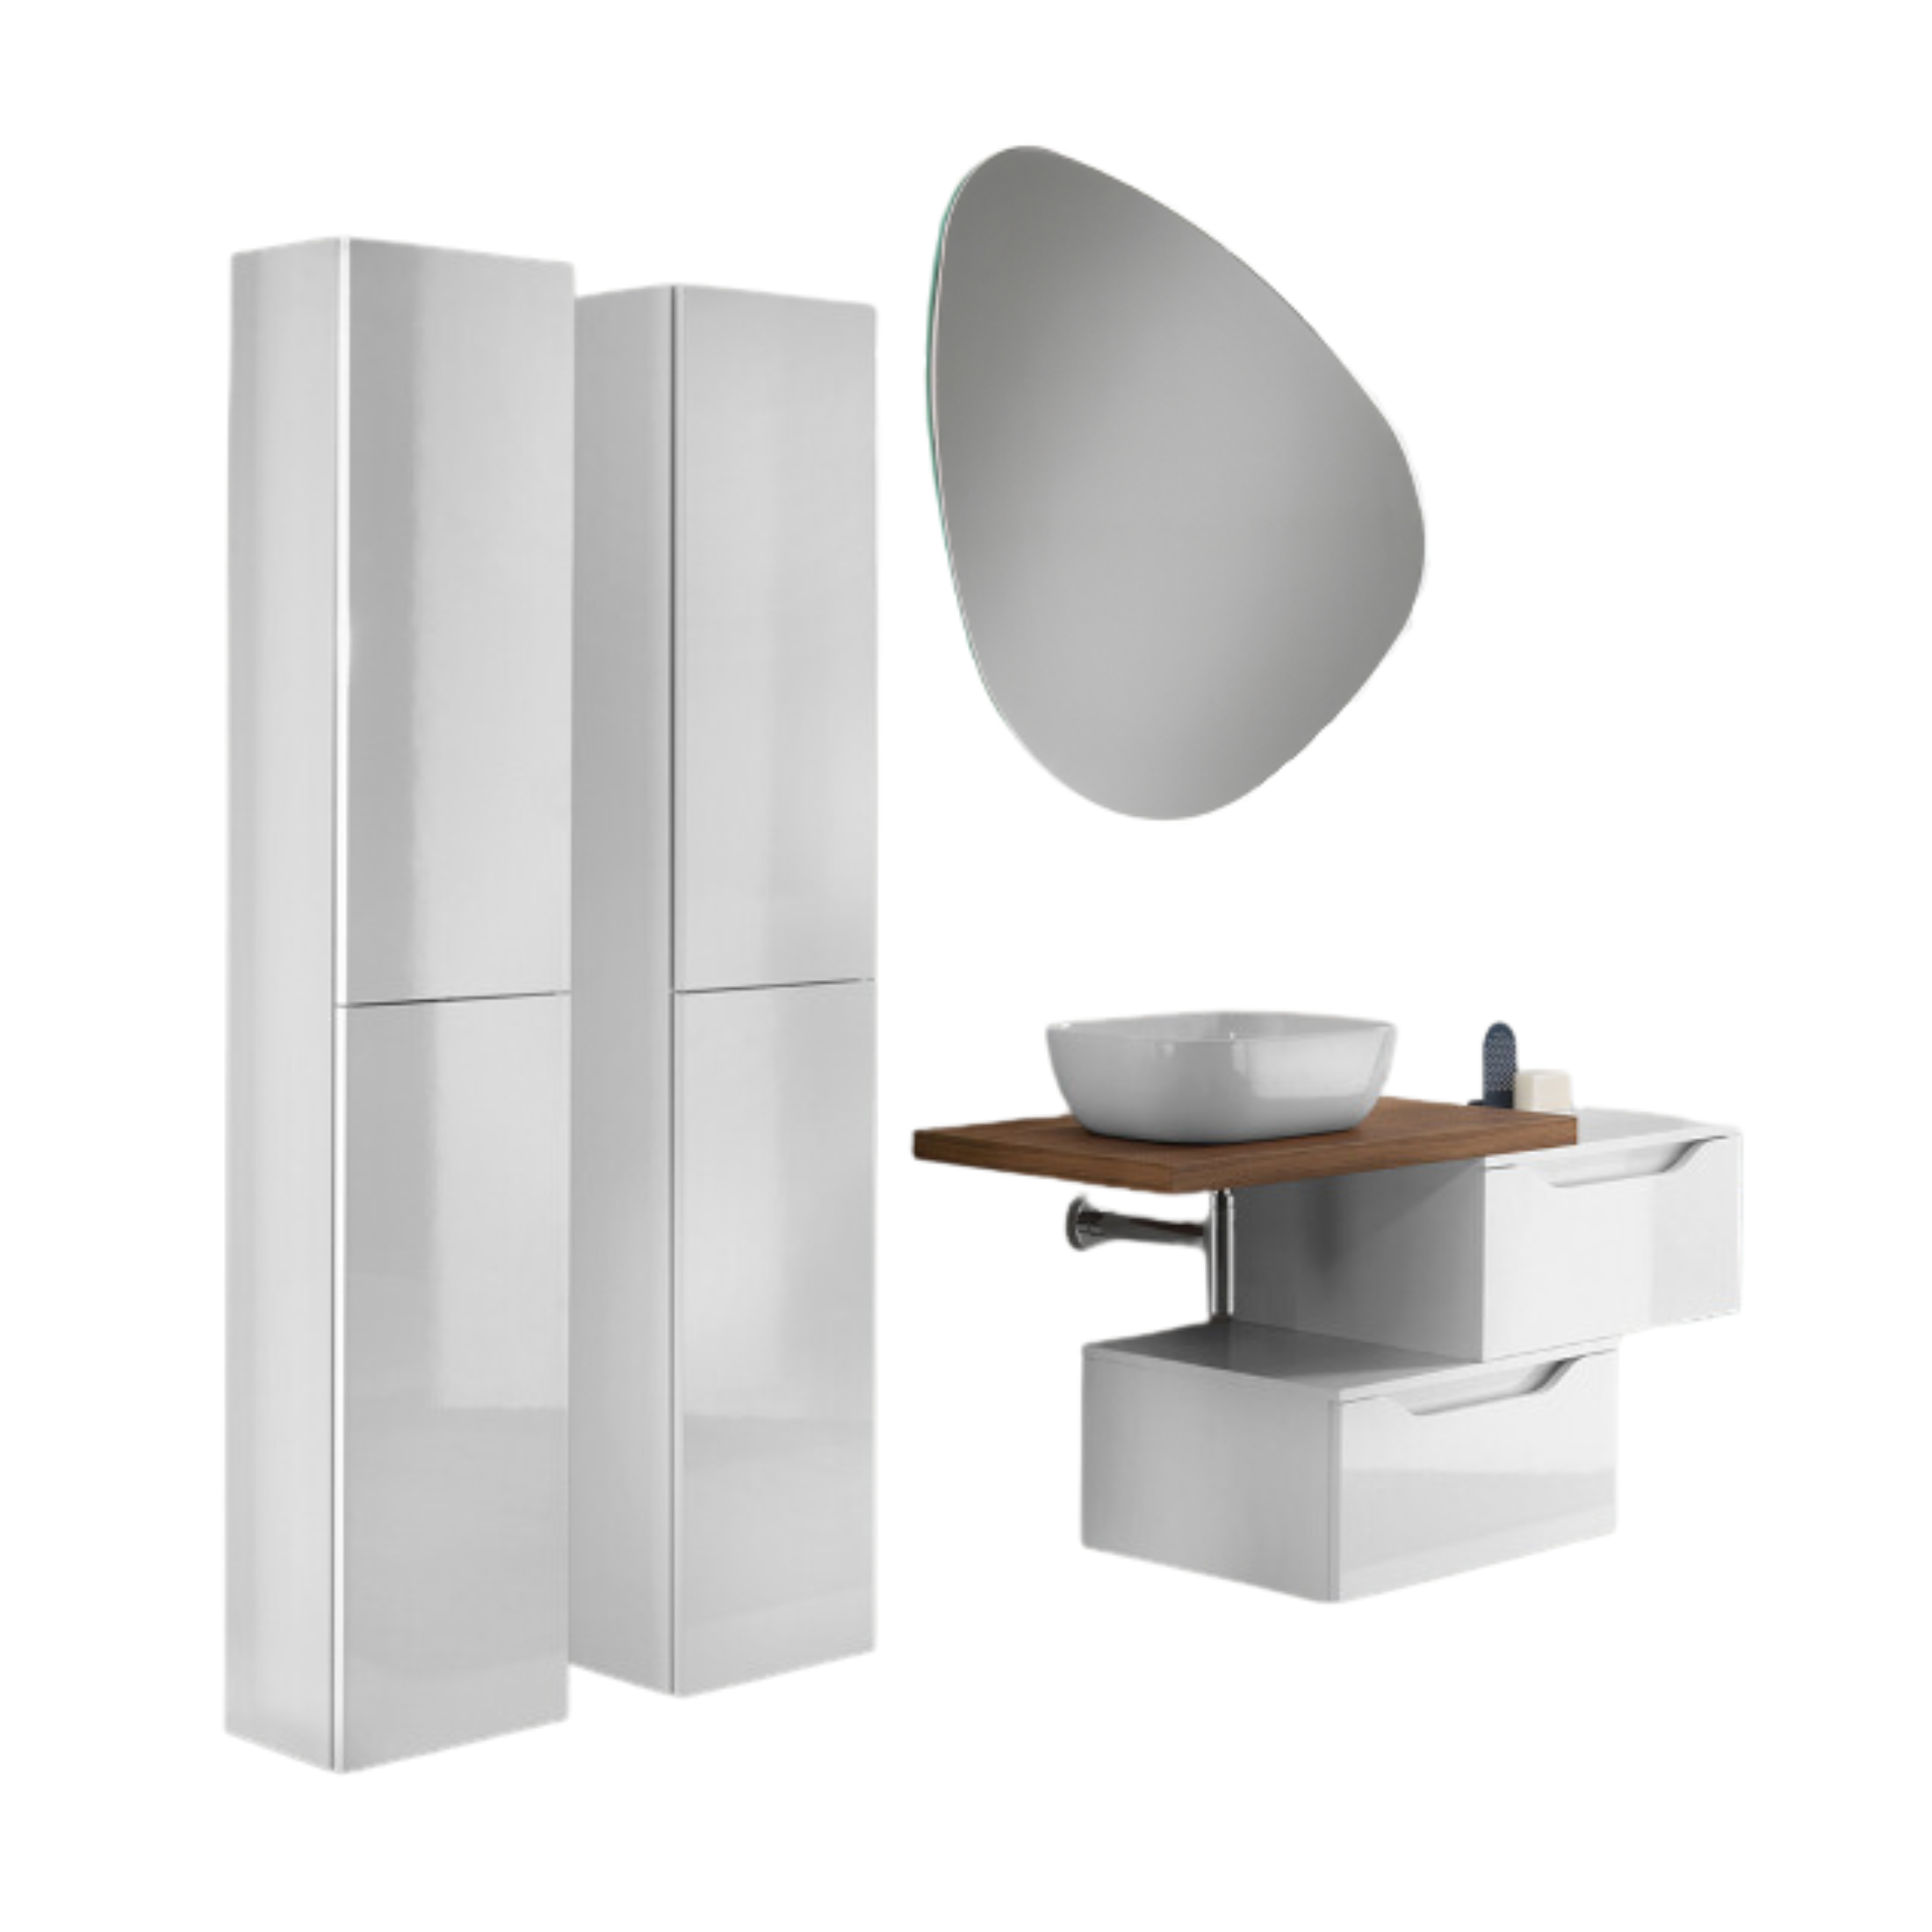 Mueble de baño suspendido "Mixi c" 2 cajones 2 columnas lavabo sobre encimera espejo LED